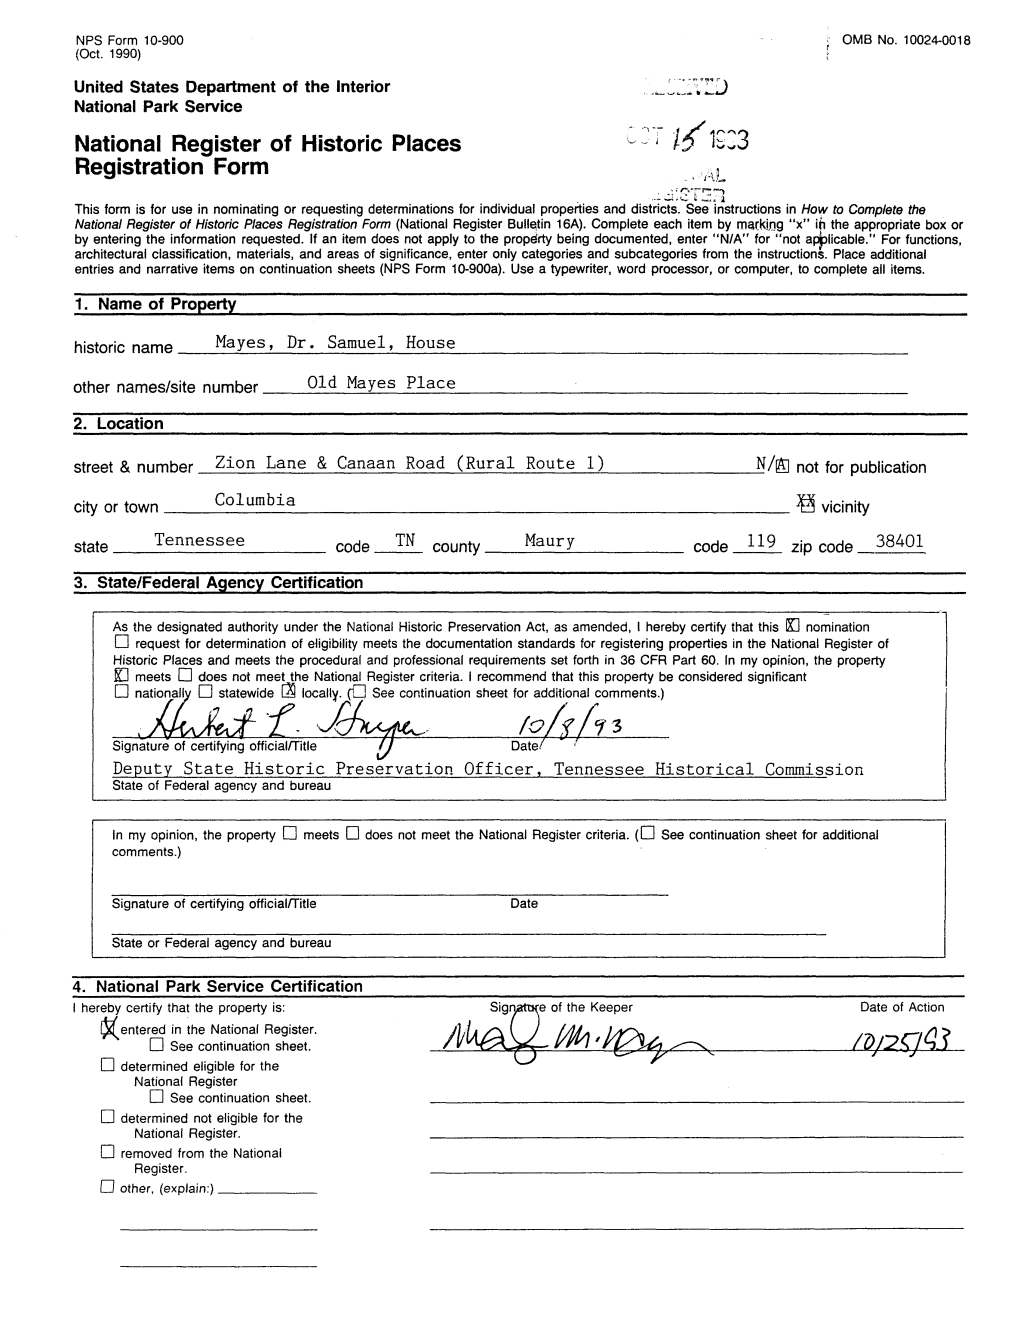 National Register of Historic Places U ' 16 ^23 Registration Form M